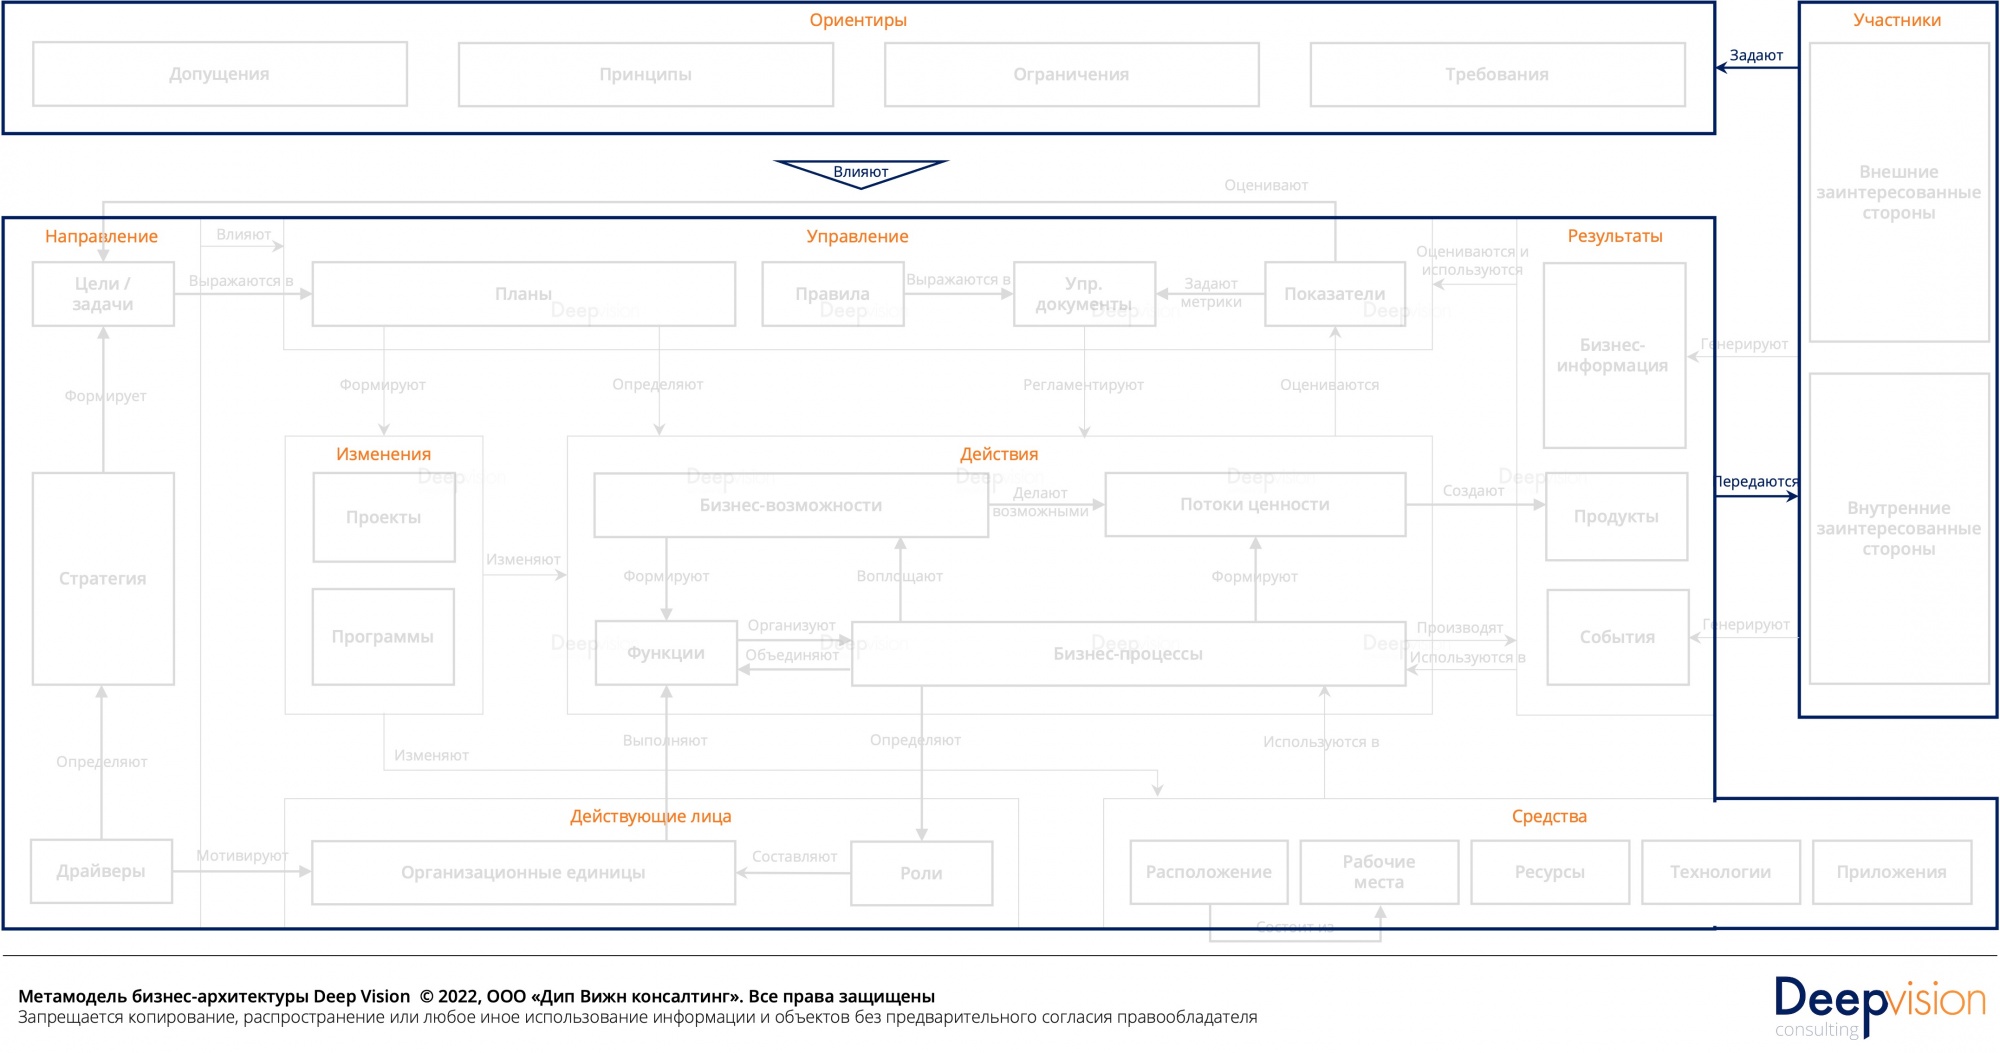 Метамодель бизнес-архитектуры - базовыи контур.jpg